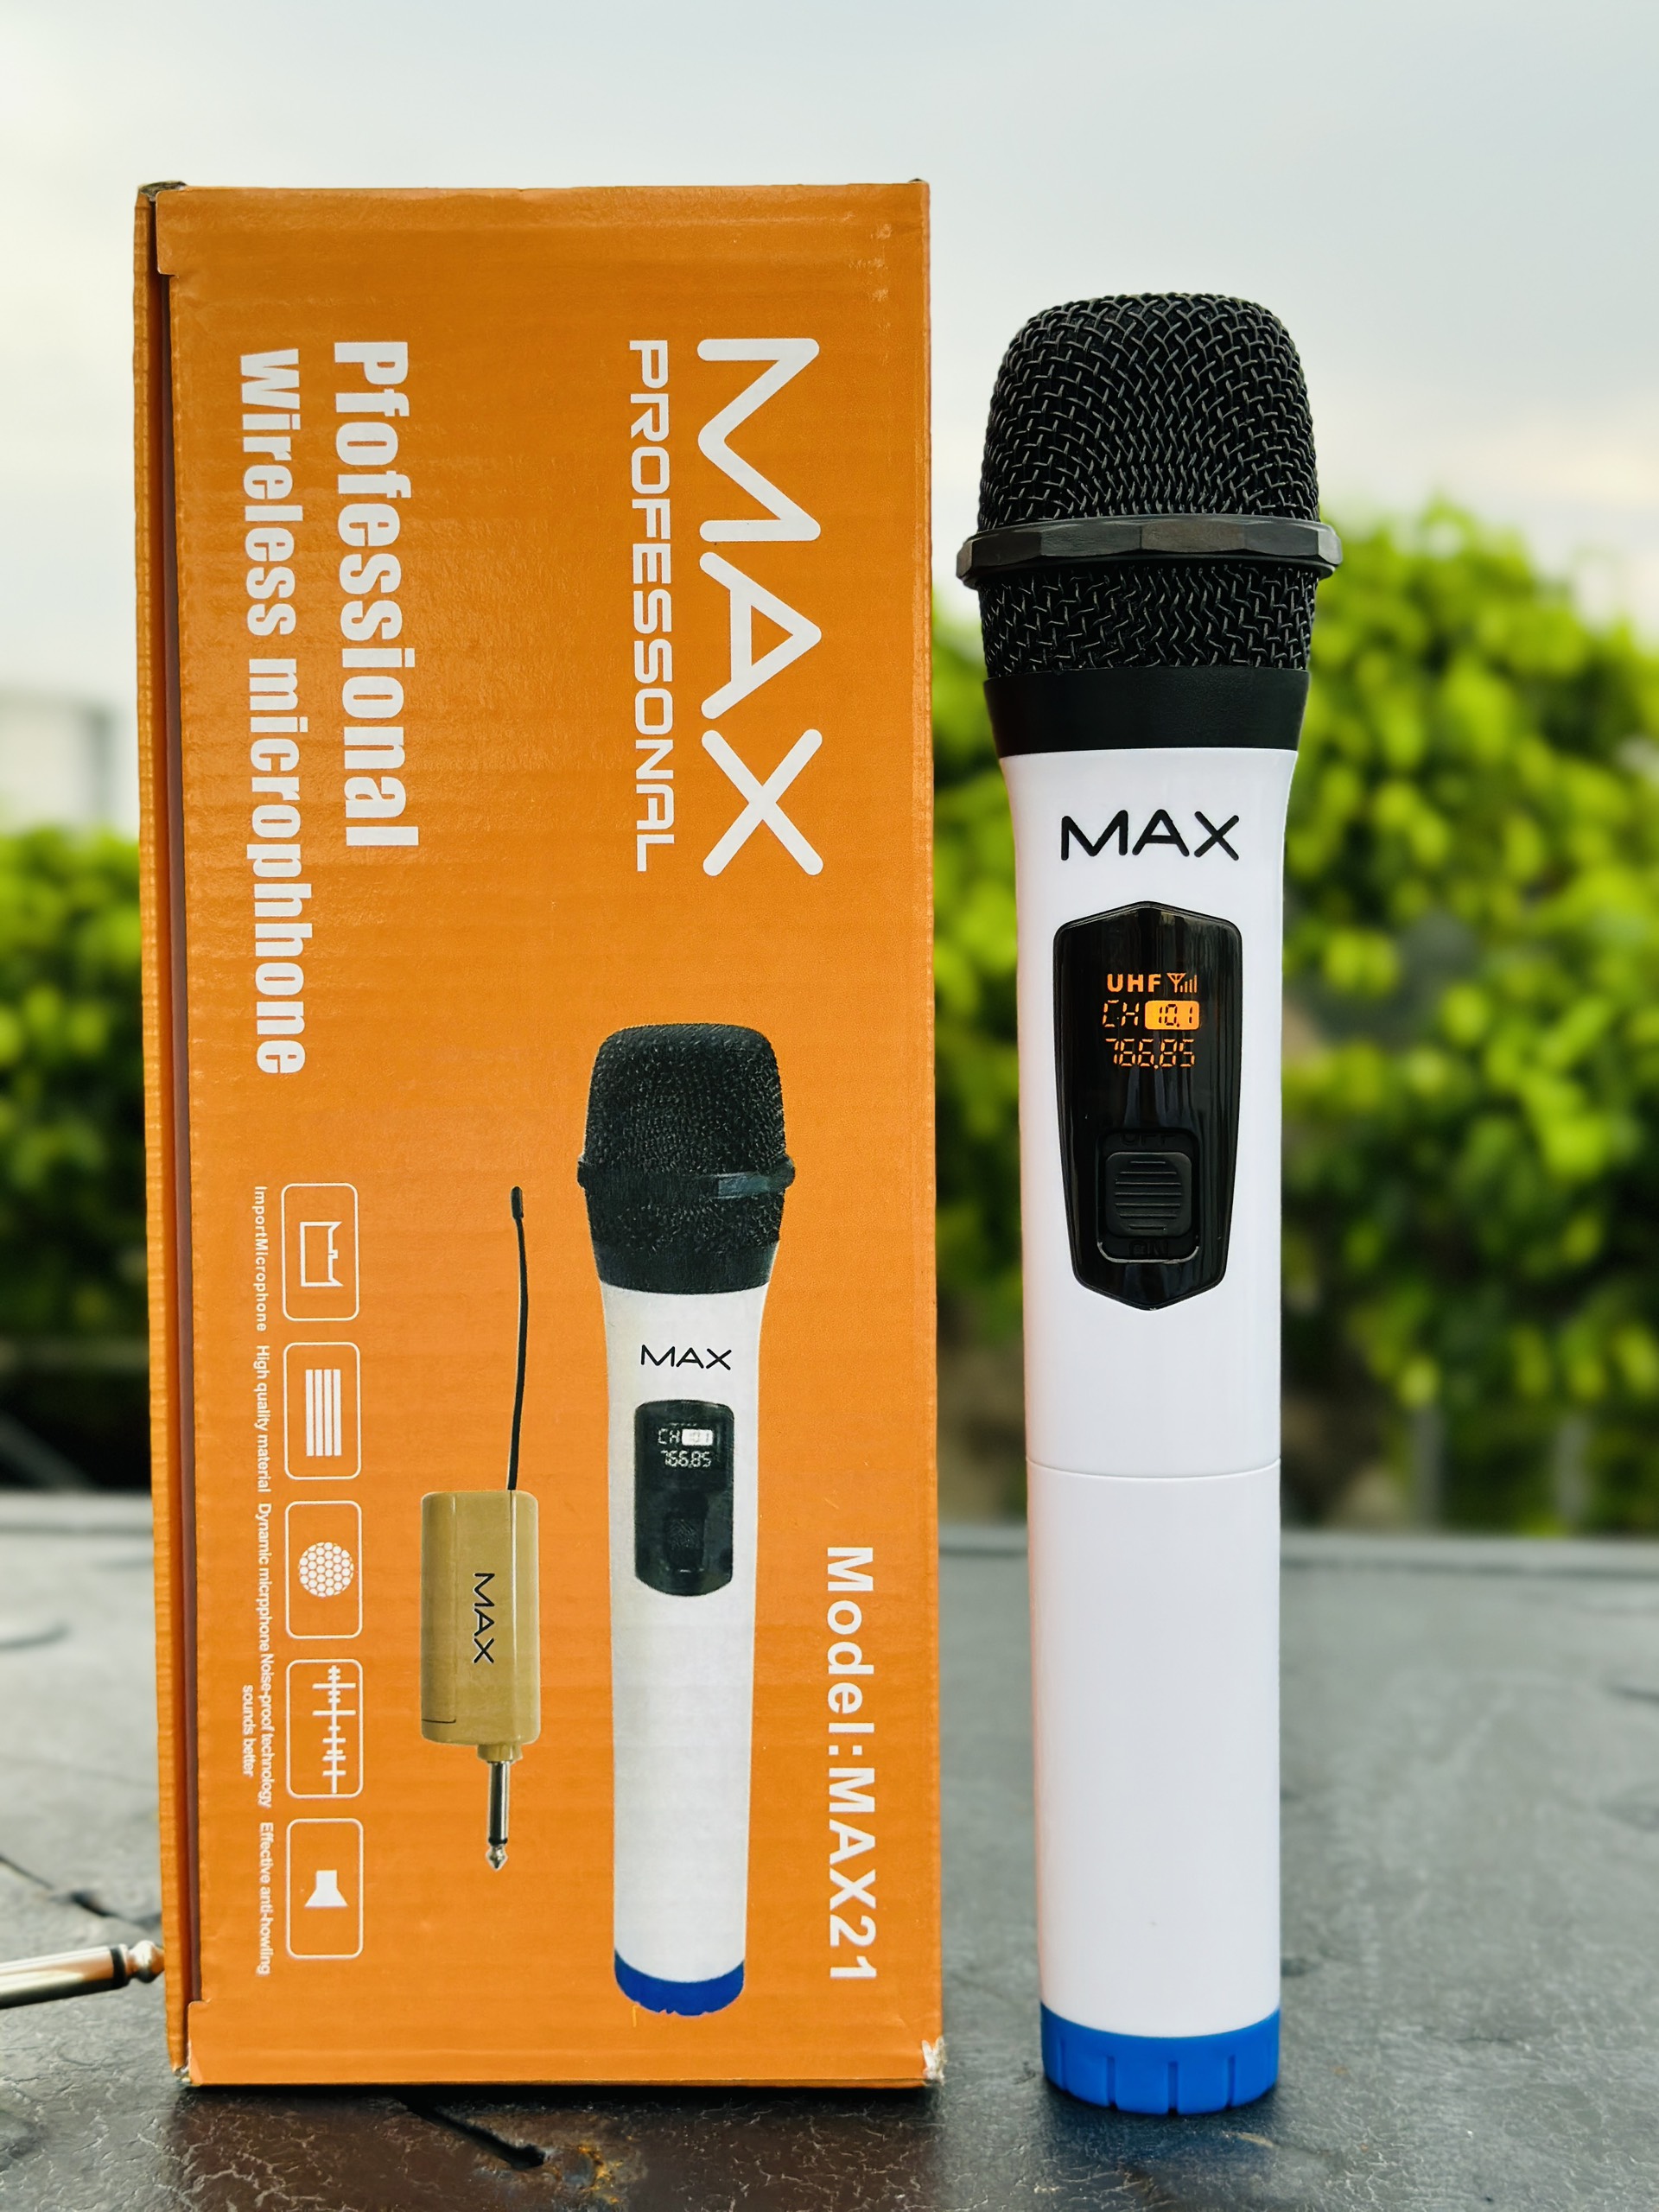 Hình ảnh Micro không dây đa năng Max 21 - Micro không dây giá tốt, sử dụng cho mọi loại thiết bị âm thanh - Micro dành cho loa kéo, loa bluetooth, amply - Màn hình Led hiển thị thông số - Âm thanh cực hay, giá cực rẻ - Hàng nhập khẩu